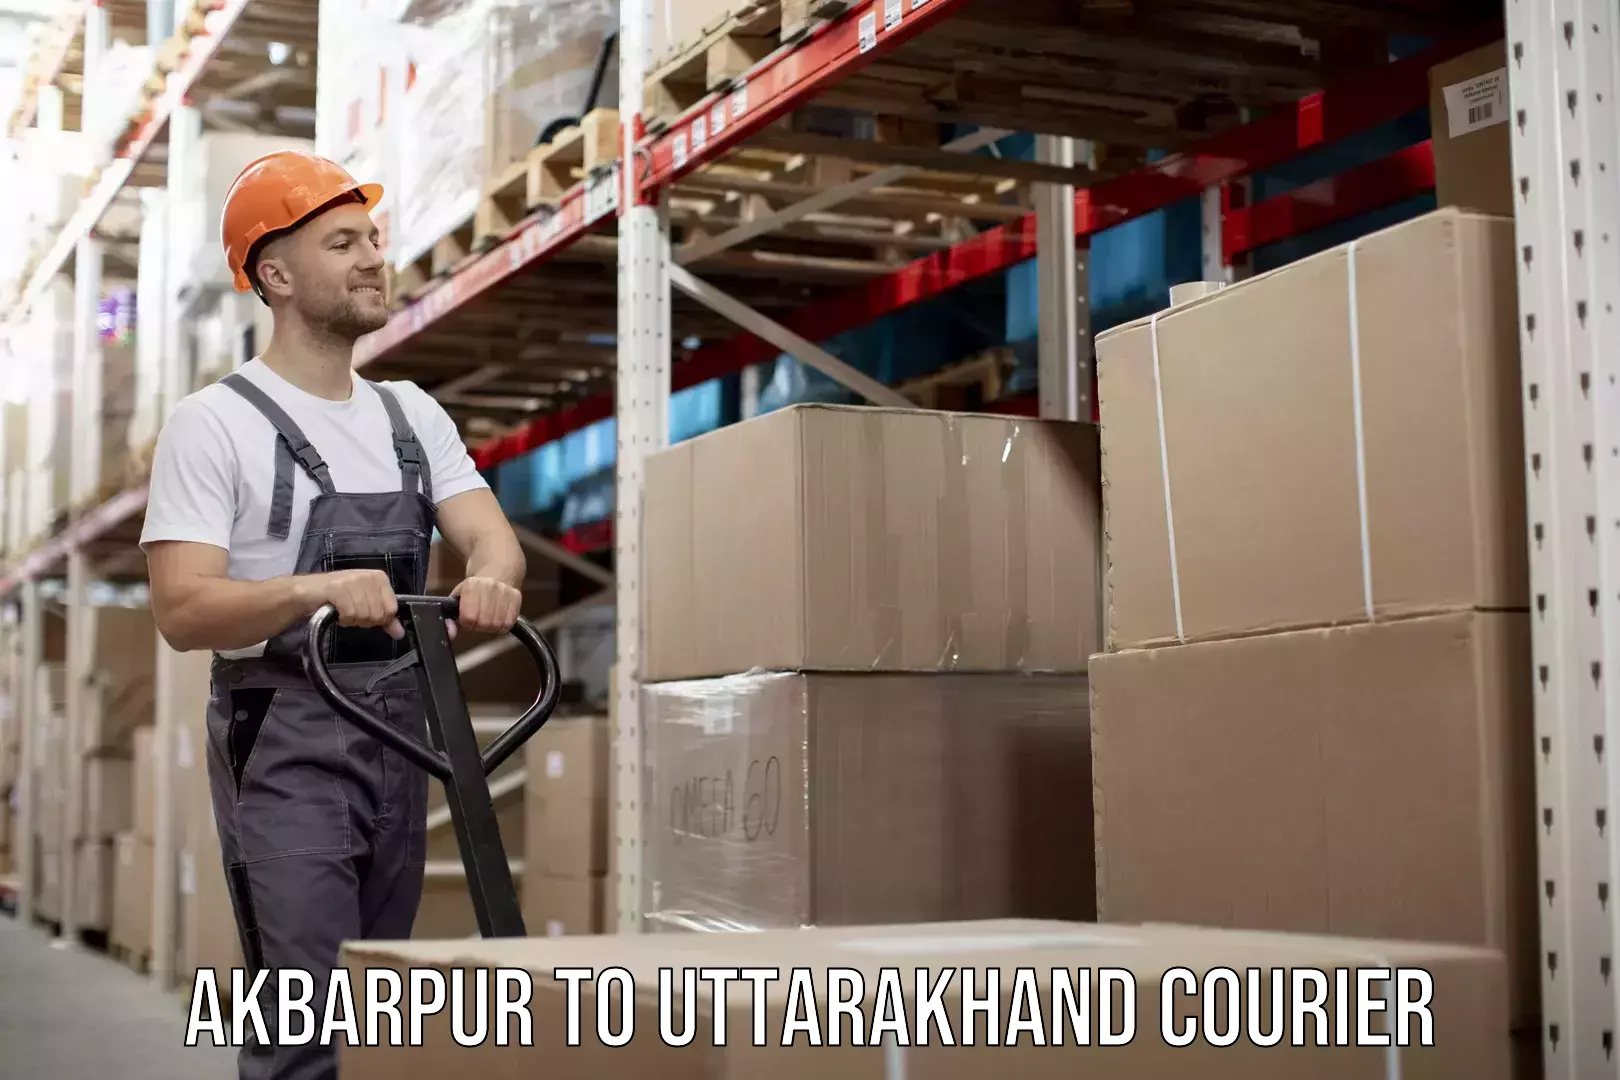 User-friendly courier app Akbarpur to Uttarakhand